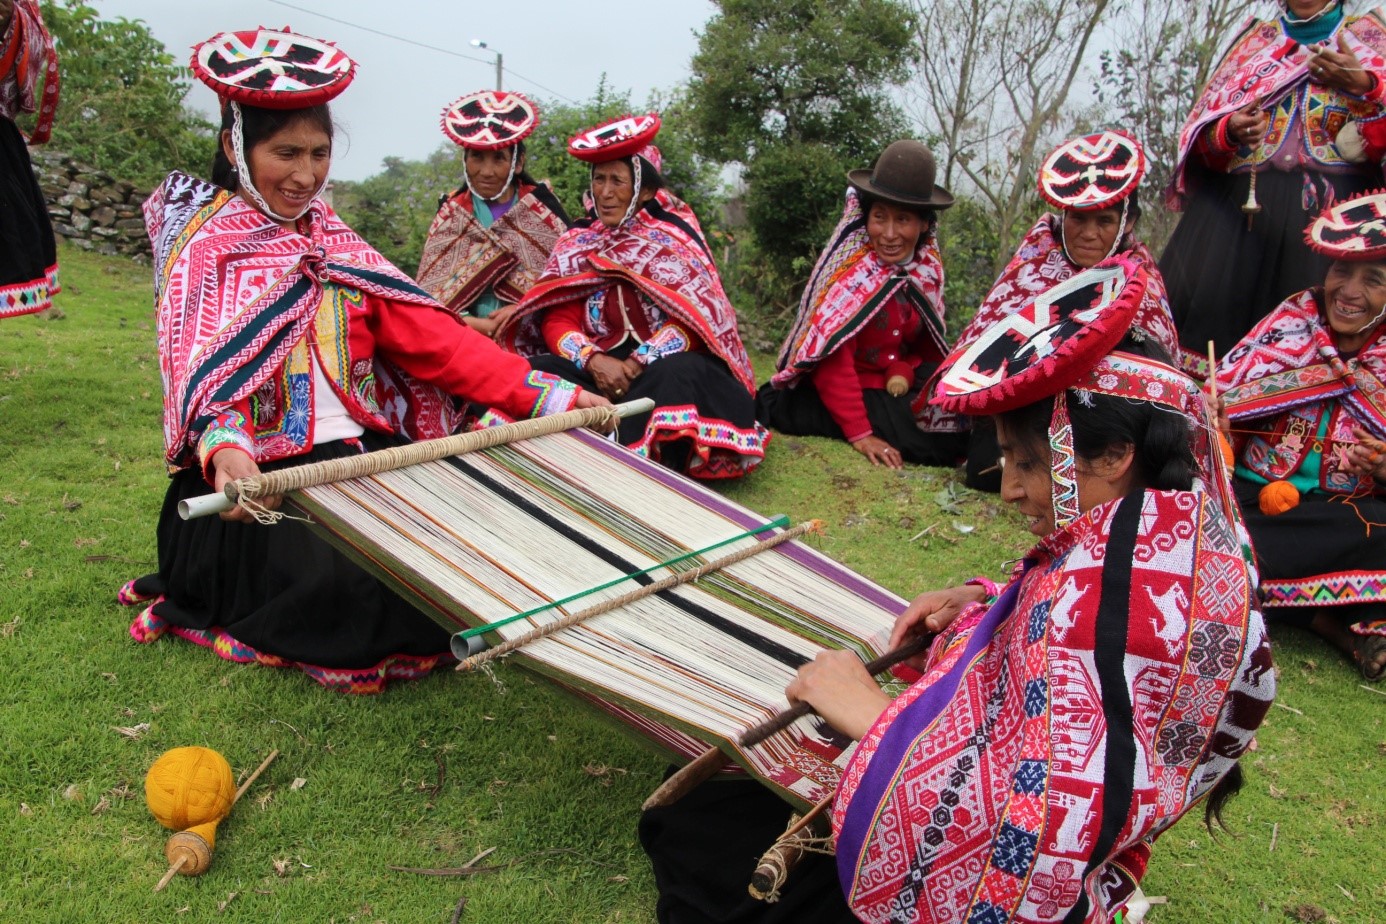 Les artisanes de la communauté de Ccachin (district de Lares, région de Cusco) font partie de l’association Inkakunaq Ruwaynin. Crédit photo : Victor Charruaud